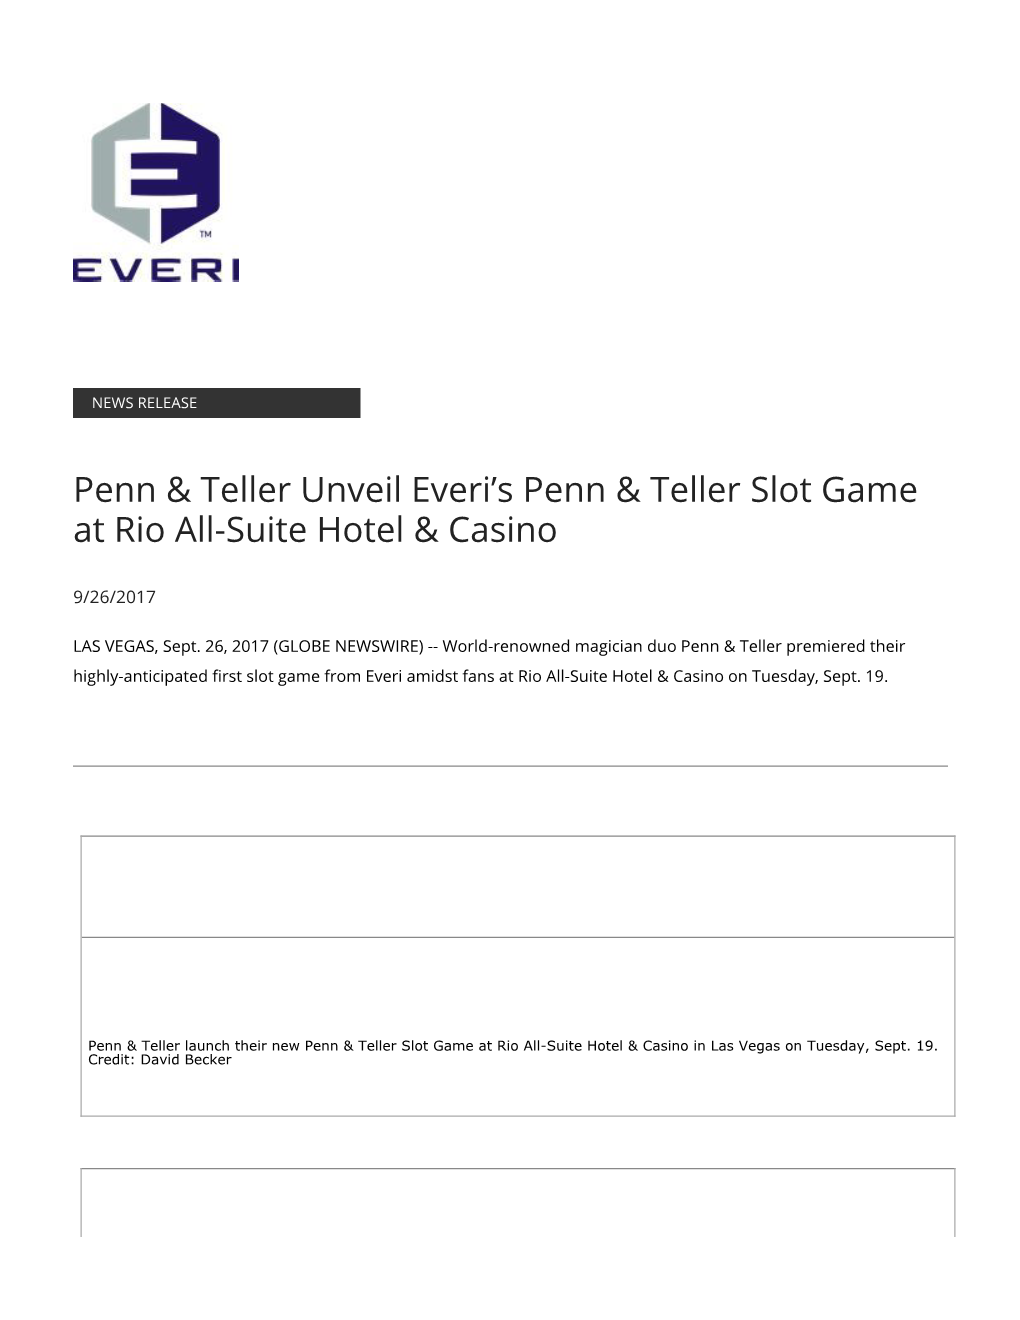 Penn & Teller Unveil Everi's Penn & Teller Slot Game at Rio All-Suite